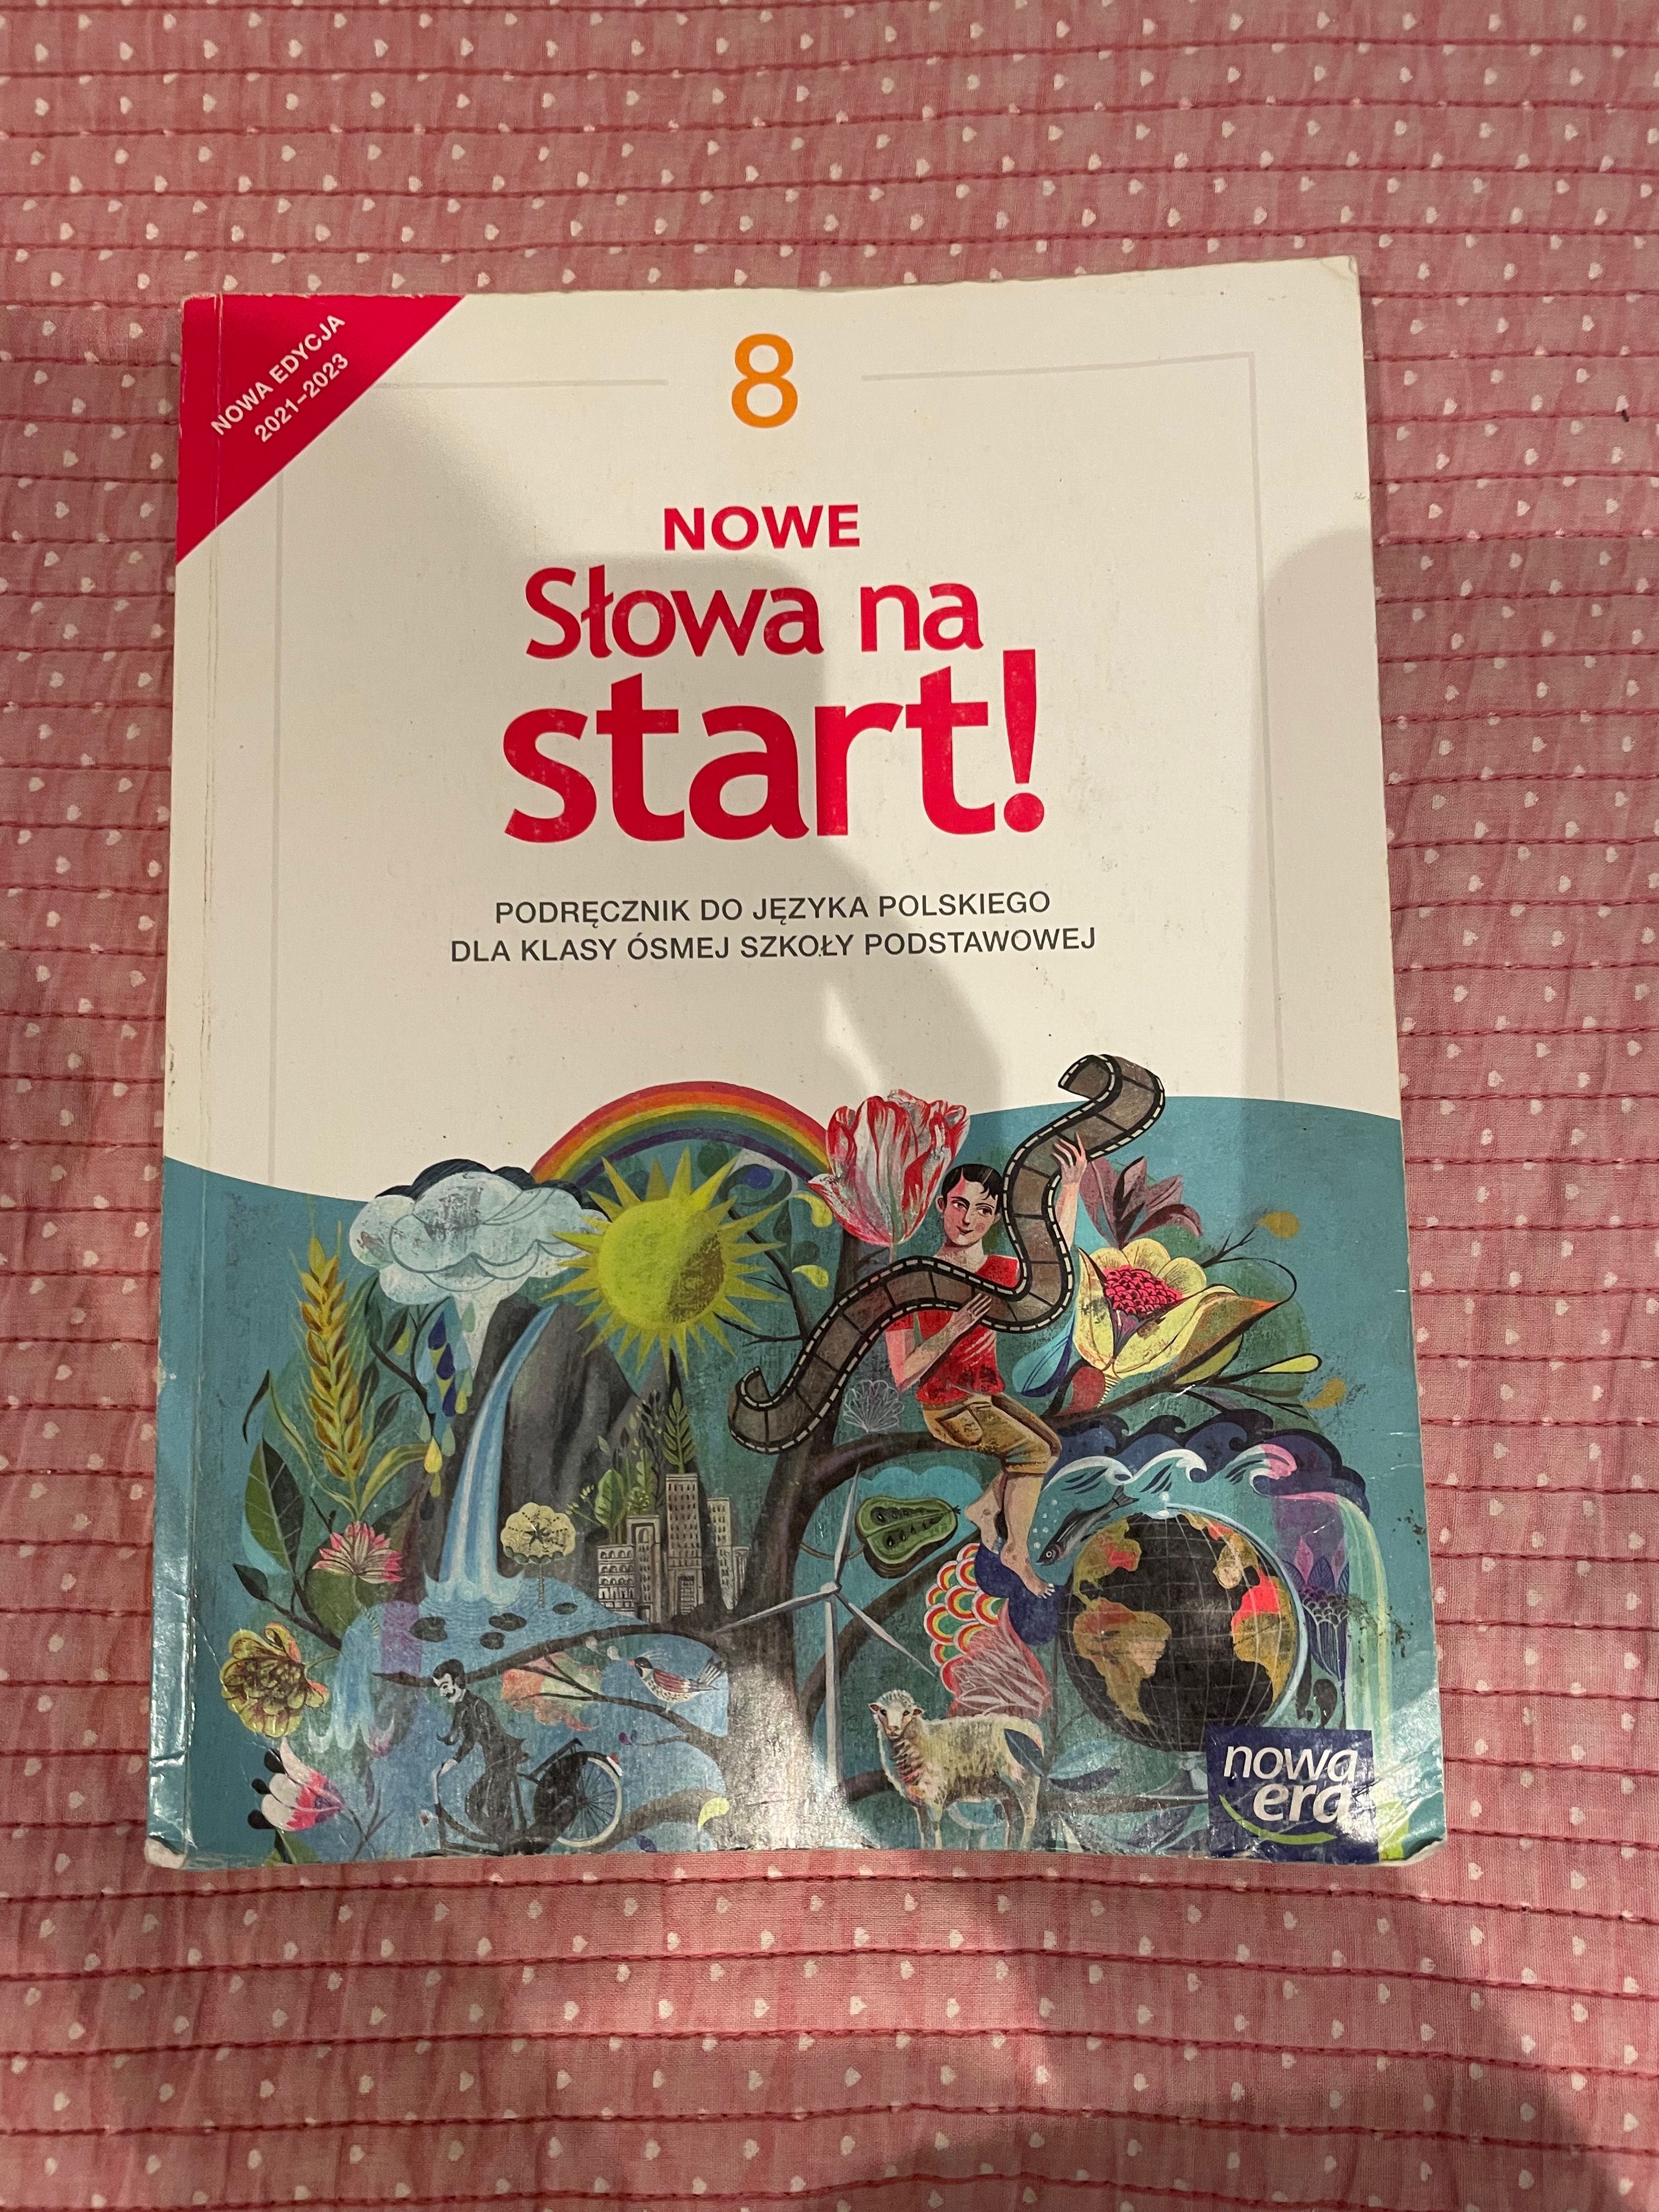 NOWE Słowa na start! 8
Podręcznik do języka polskiego dla klasy ósmej